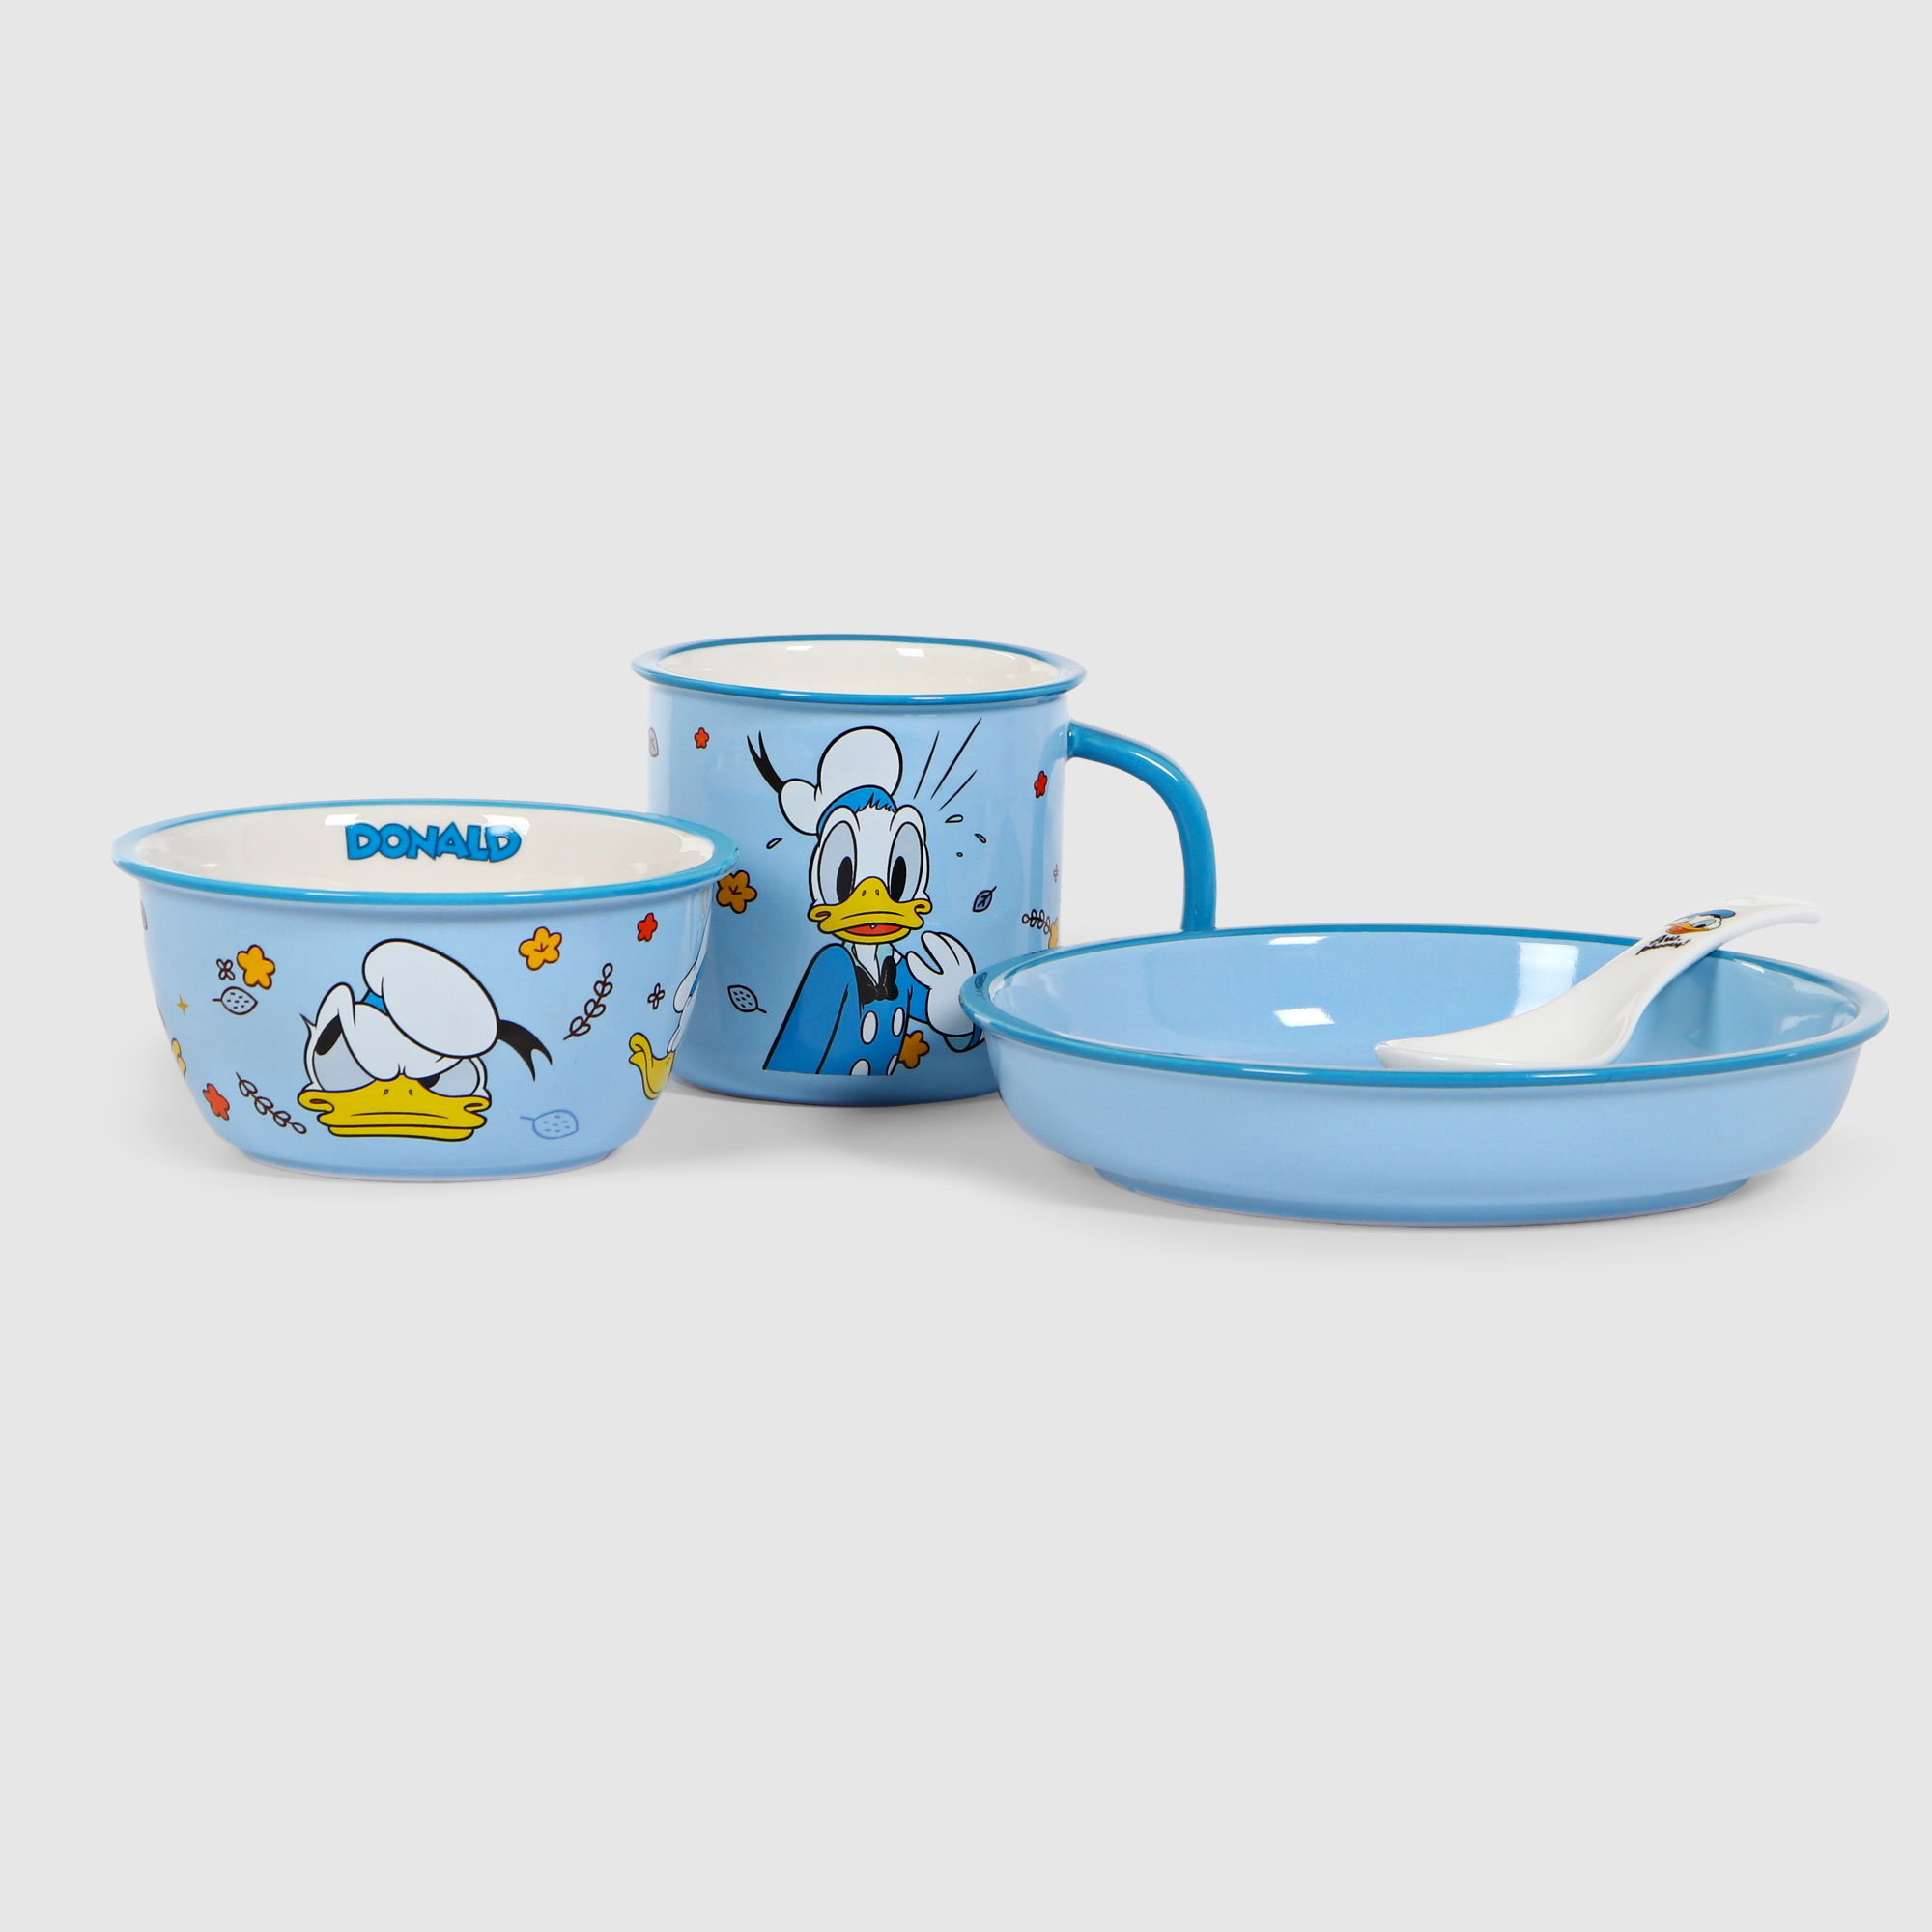 Набор посуды Disney Дональд дак 4 предмета, цвет голубой